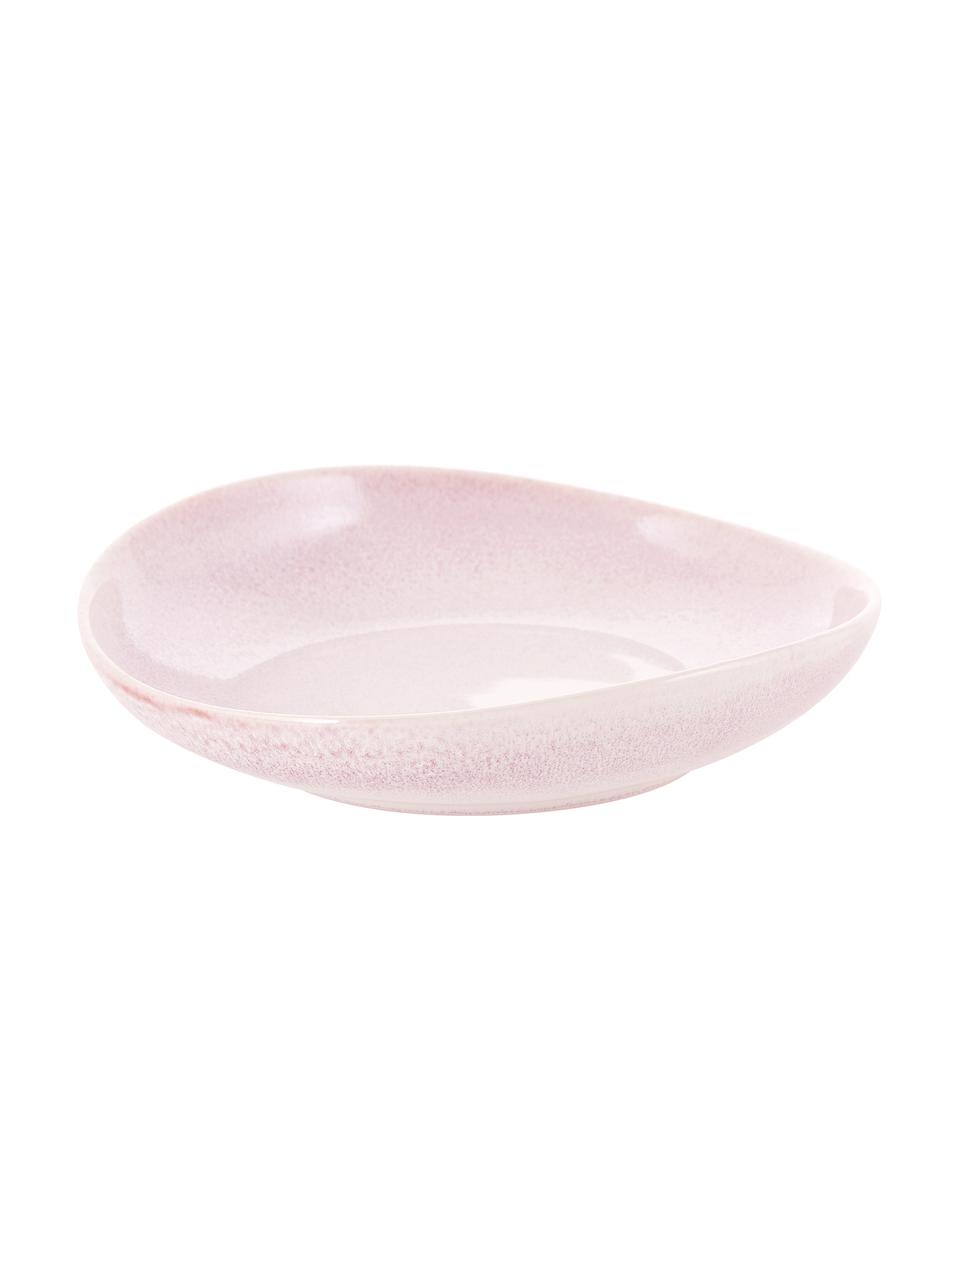 Assiette à soupe porcelaine rose Amalia, 2 pièces, Porcelaine, Rose pastel, blanc crème, Ø 20 cm